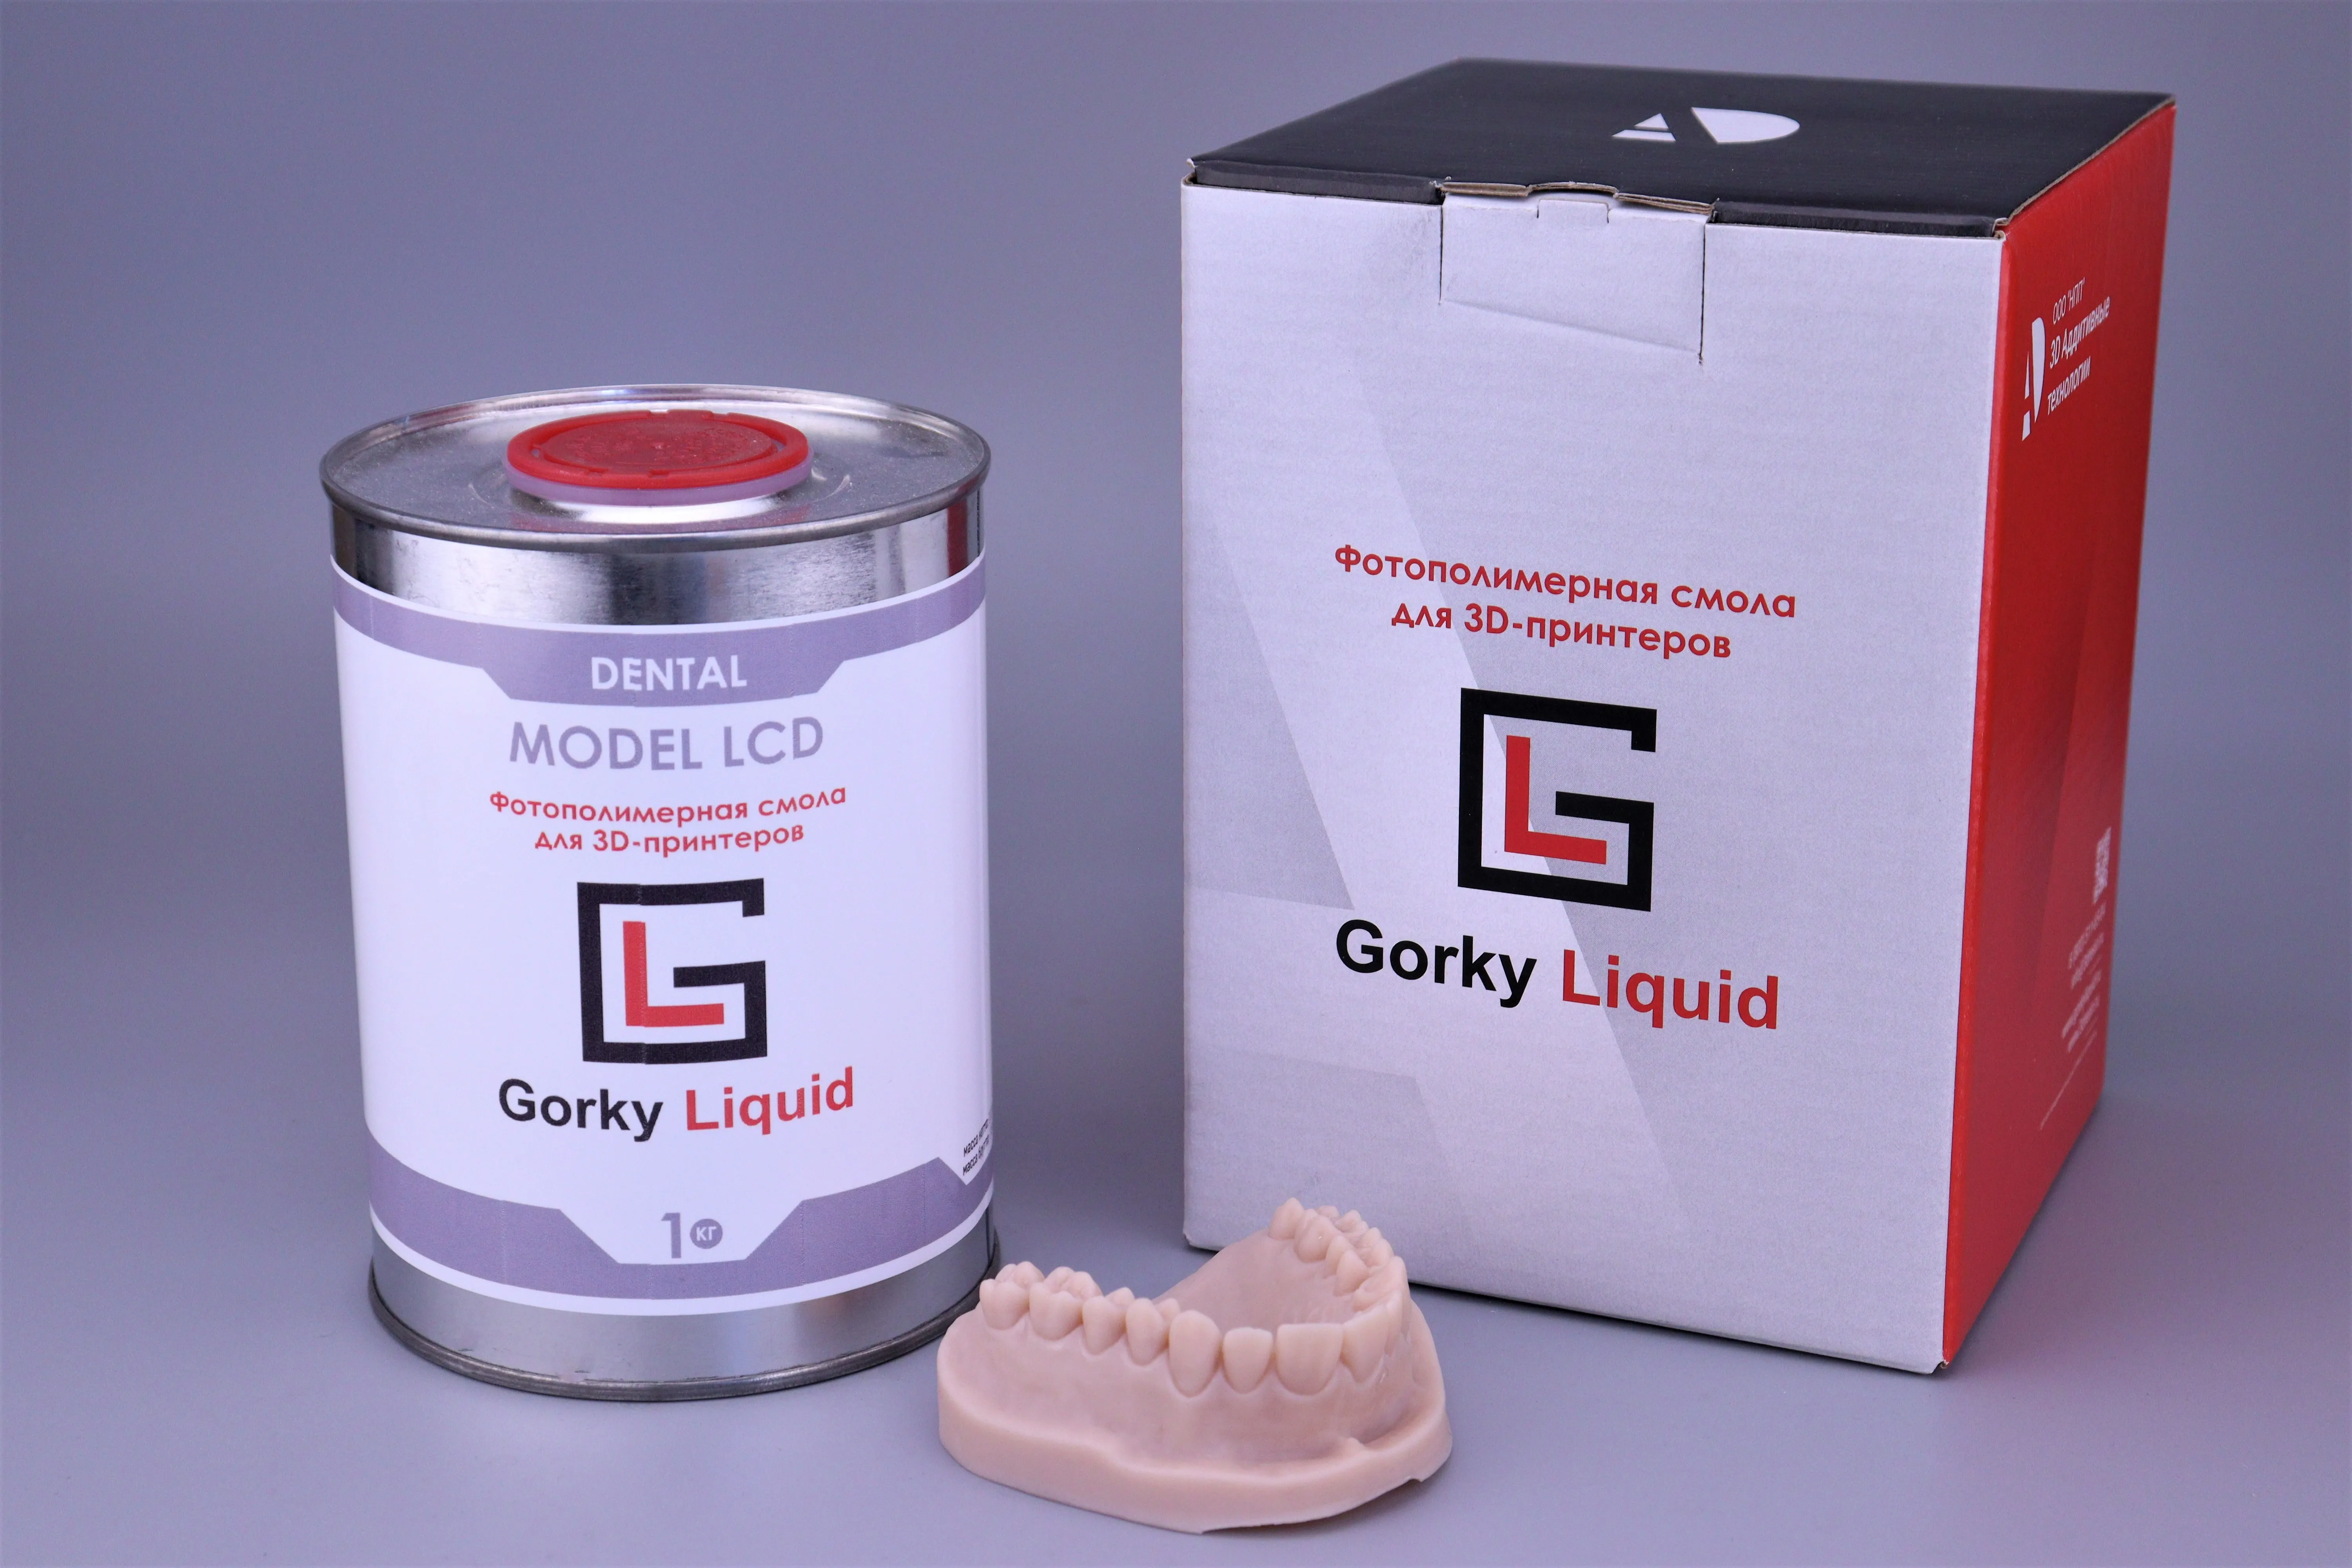 "Dental Model" LCD/DLP Peach 1 кг фотополимерная смола "Gorky Liquid "